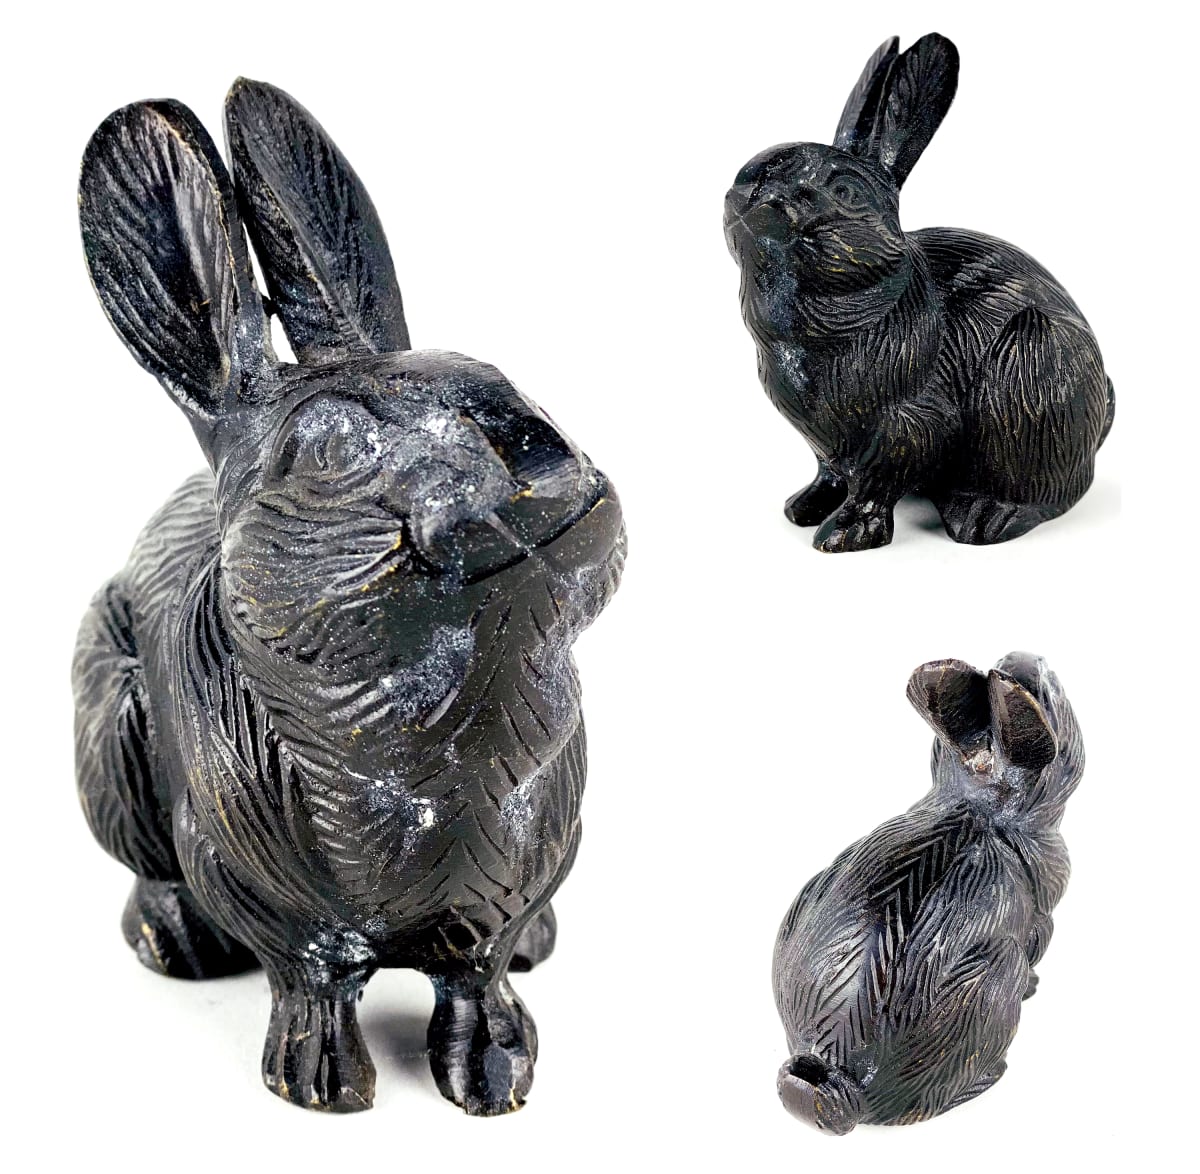 5144 - Bronze Rabbit sculpture  Image: 5144 - Bronze Rabbit sculpture